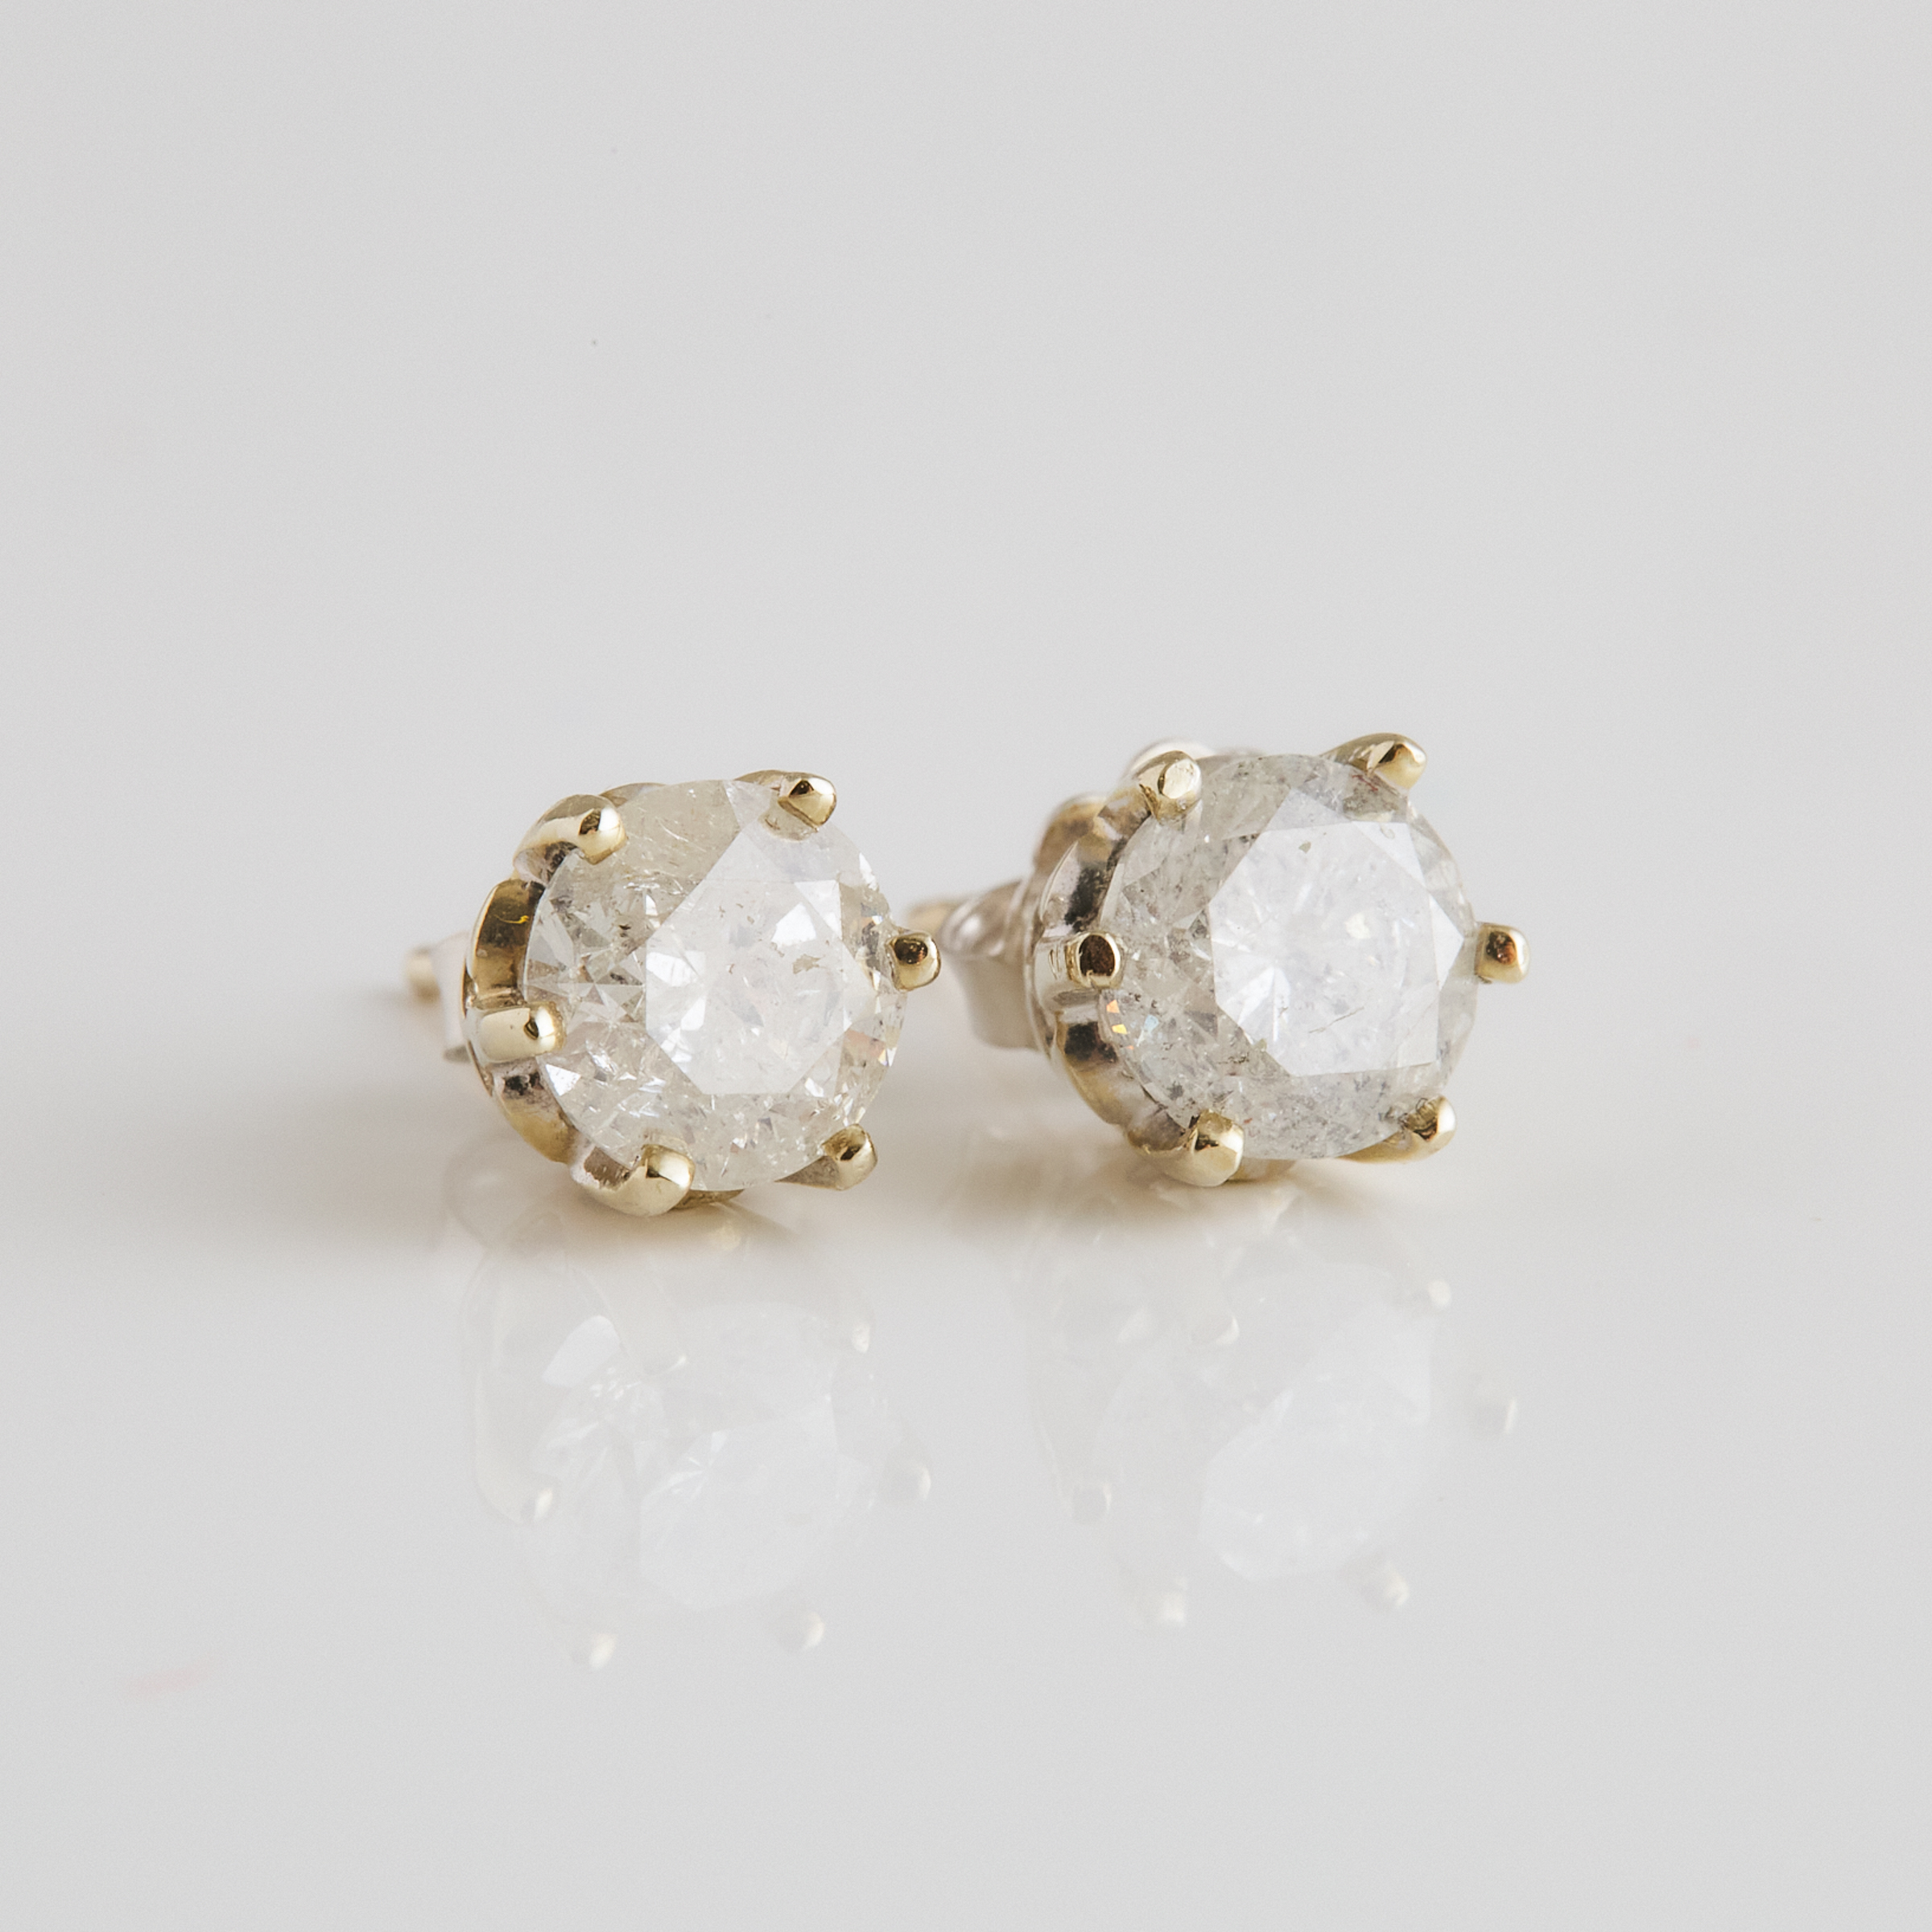 Pair Of 18k White Gold Stud Earrings